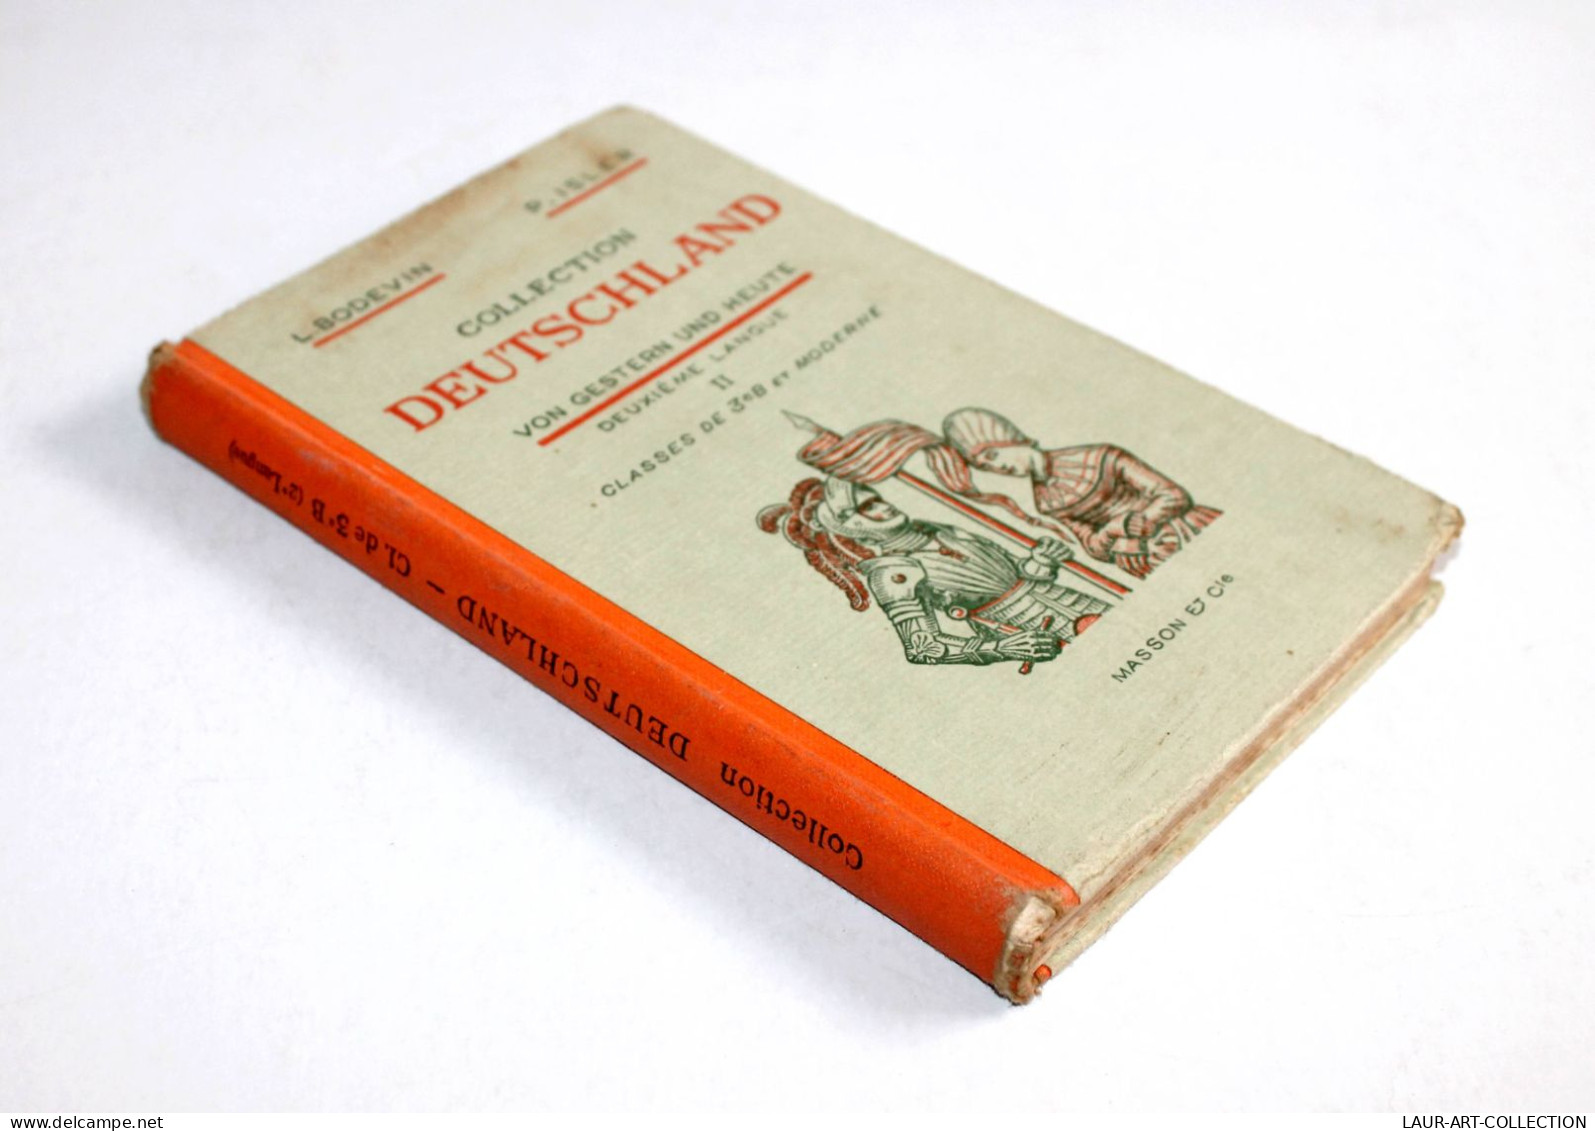 COLLECTION DEUTSCHLAND VON GESTERN UND HEUTE 2e LANGUE BODEVIN ISLER 1957 MASSON / SCOLAIRE LIVRE COLLECTION (3008.58) - School Books